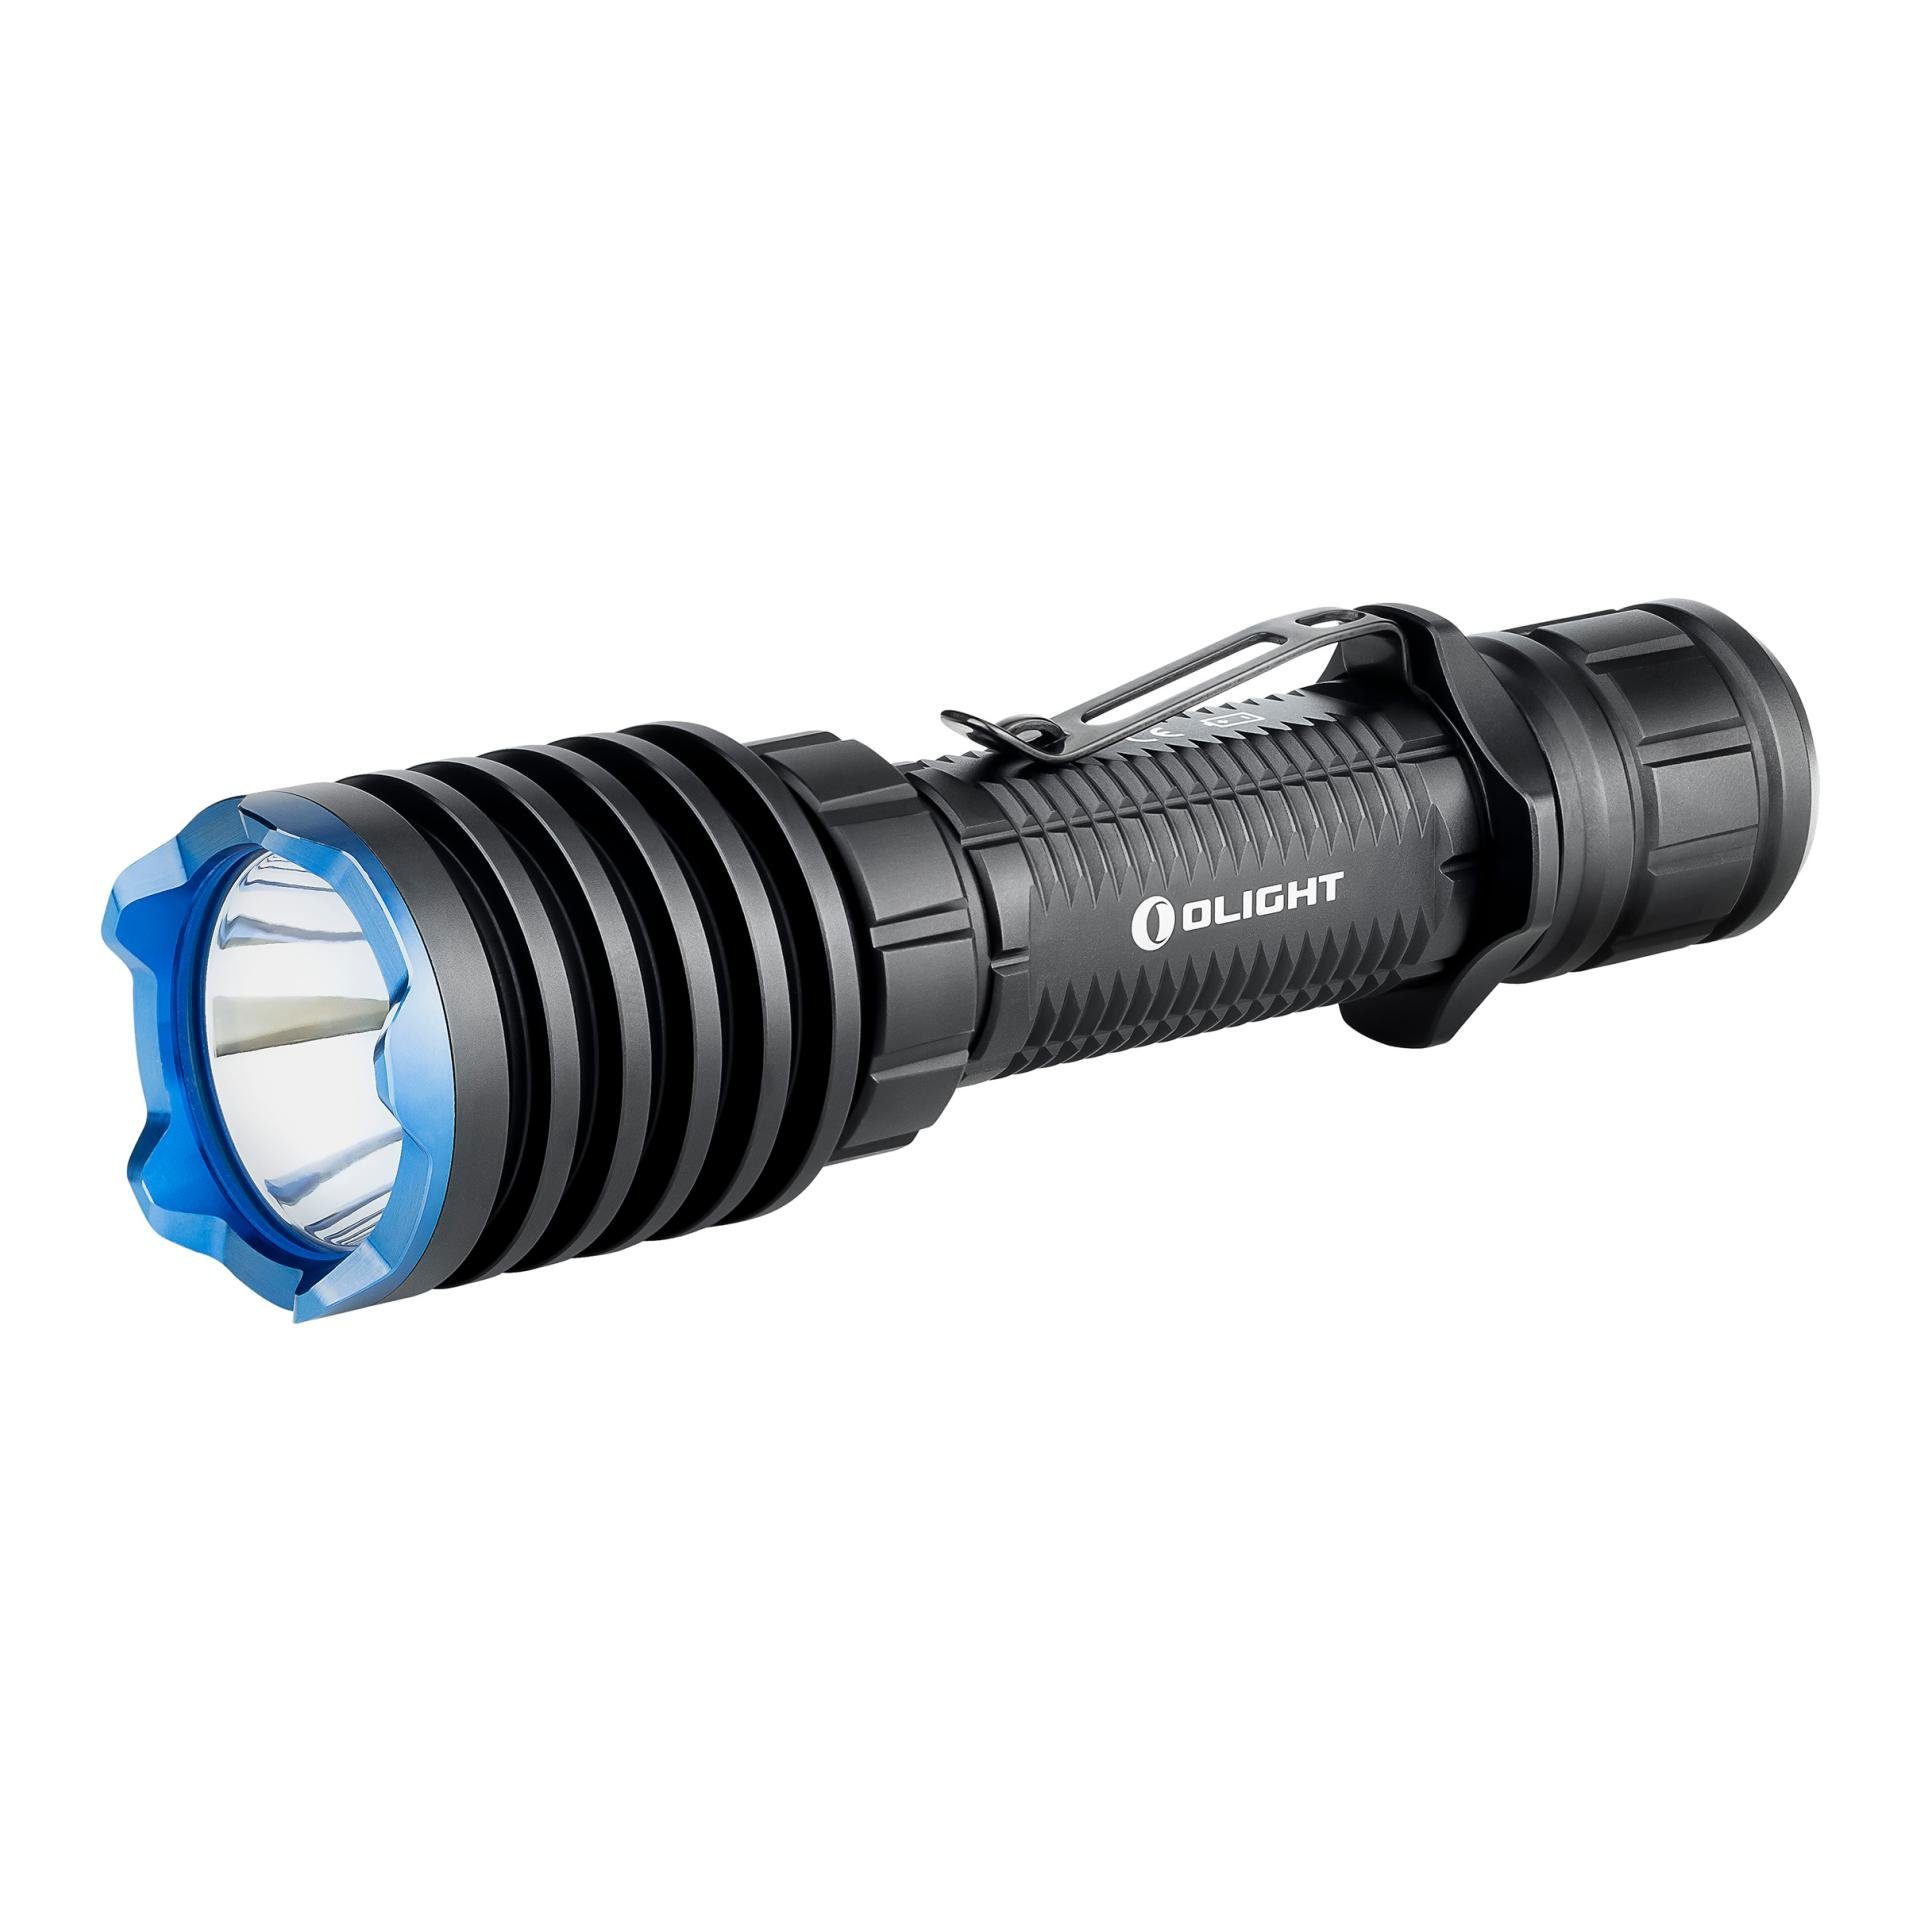 Image of Olight Warrior X Pro LED Taschenlampe - Schwarz bei Hauptner.ch